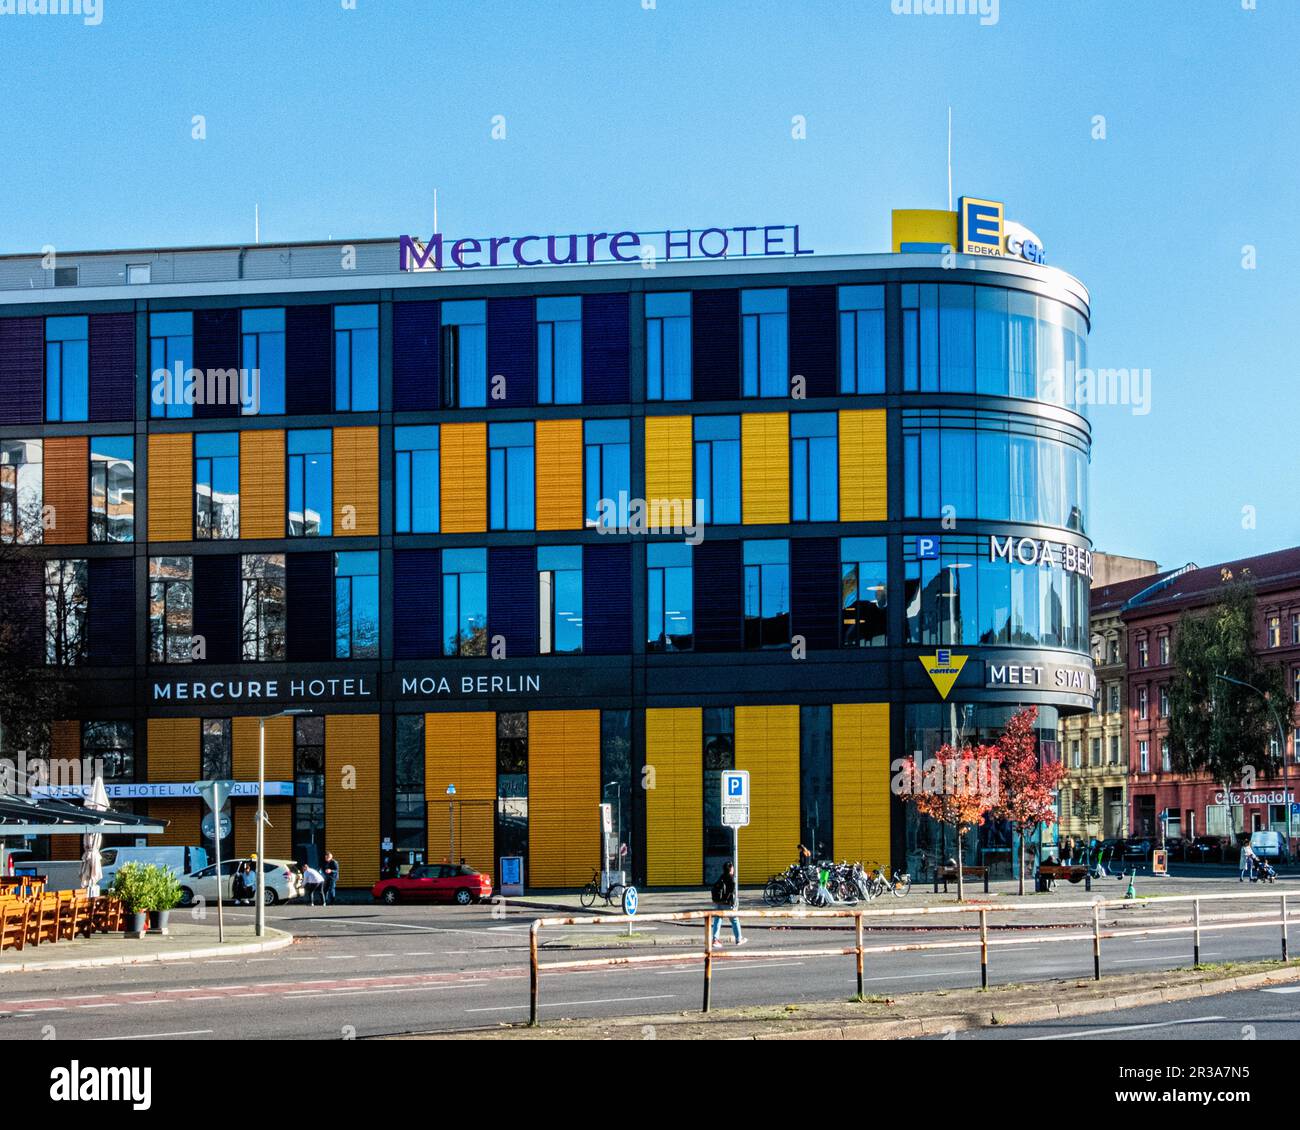 Mercure Hotel Moa Berlin, E-Centre, Stephanstraße 41, Moabit-Mitte, Berlin, Germany Stock Photo